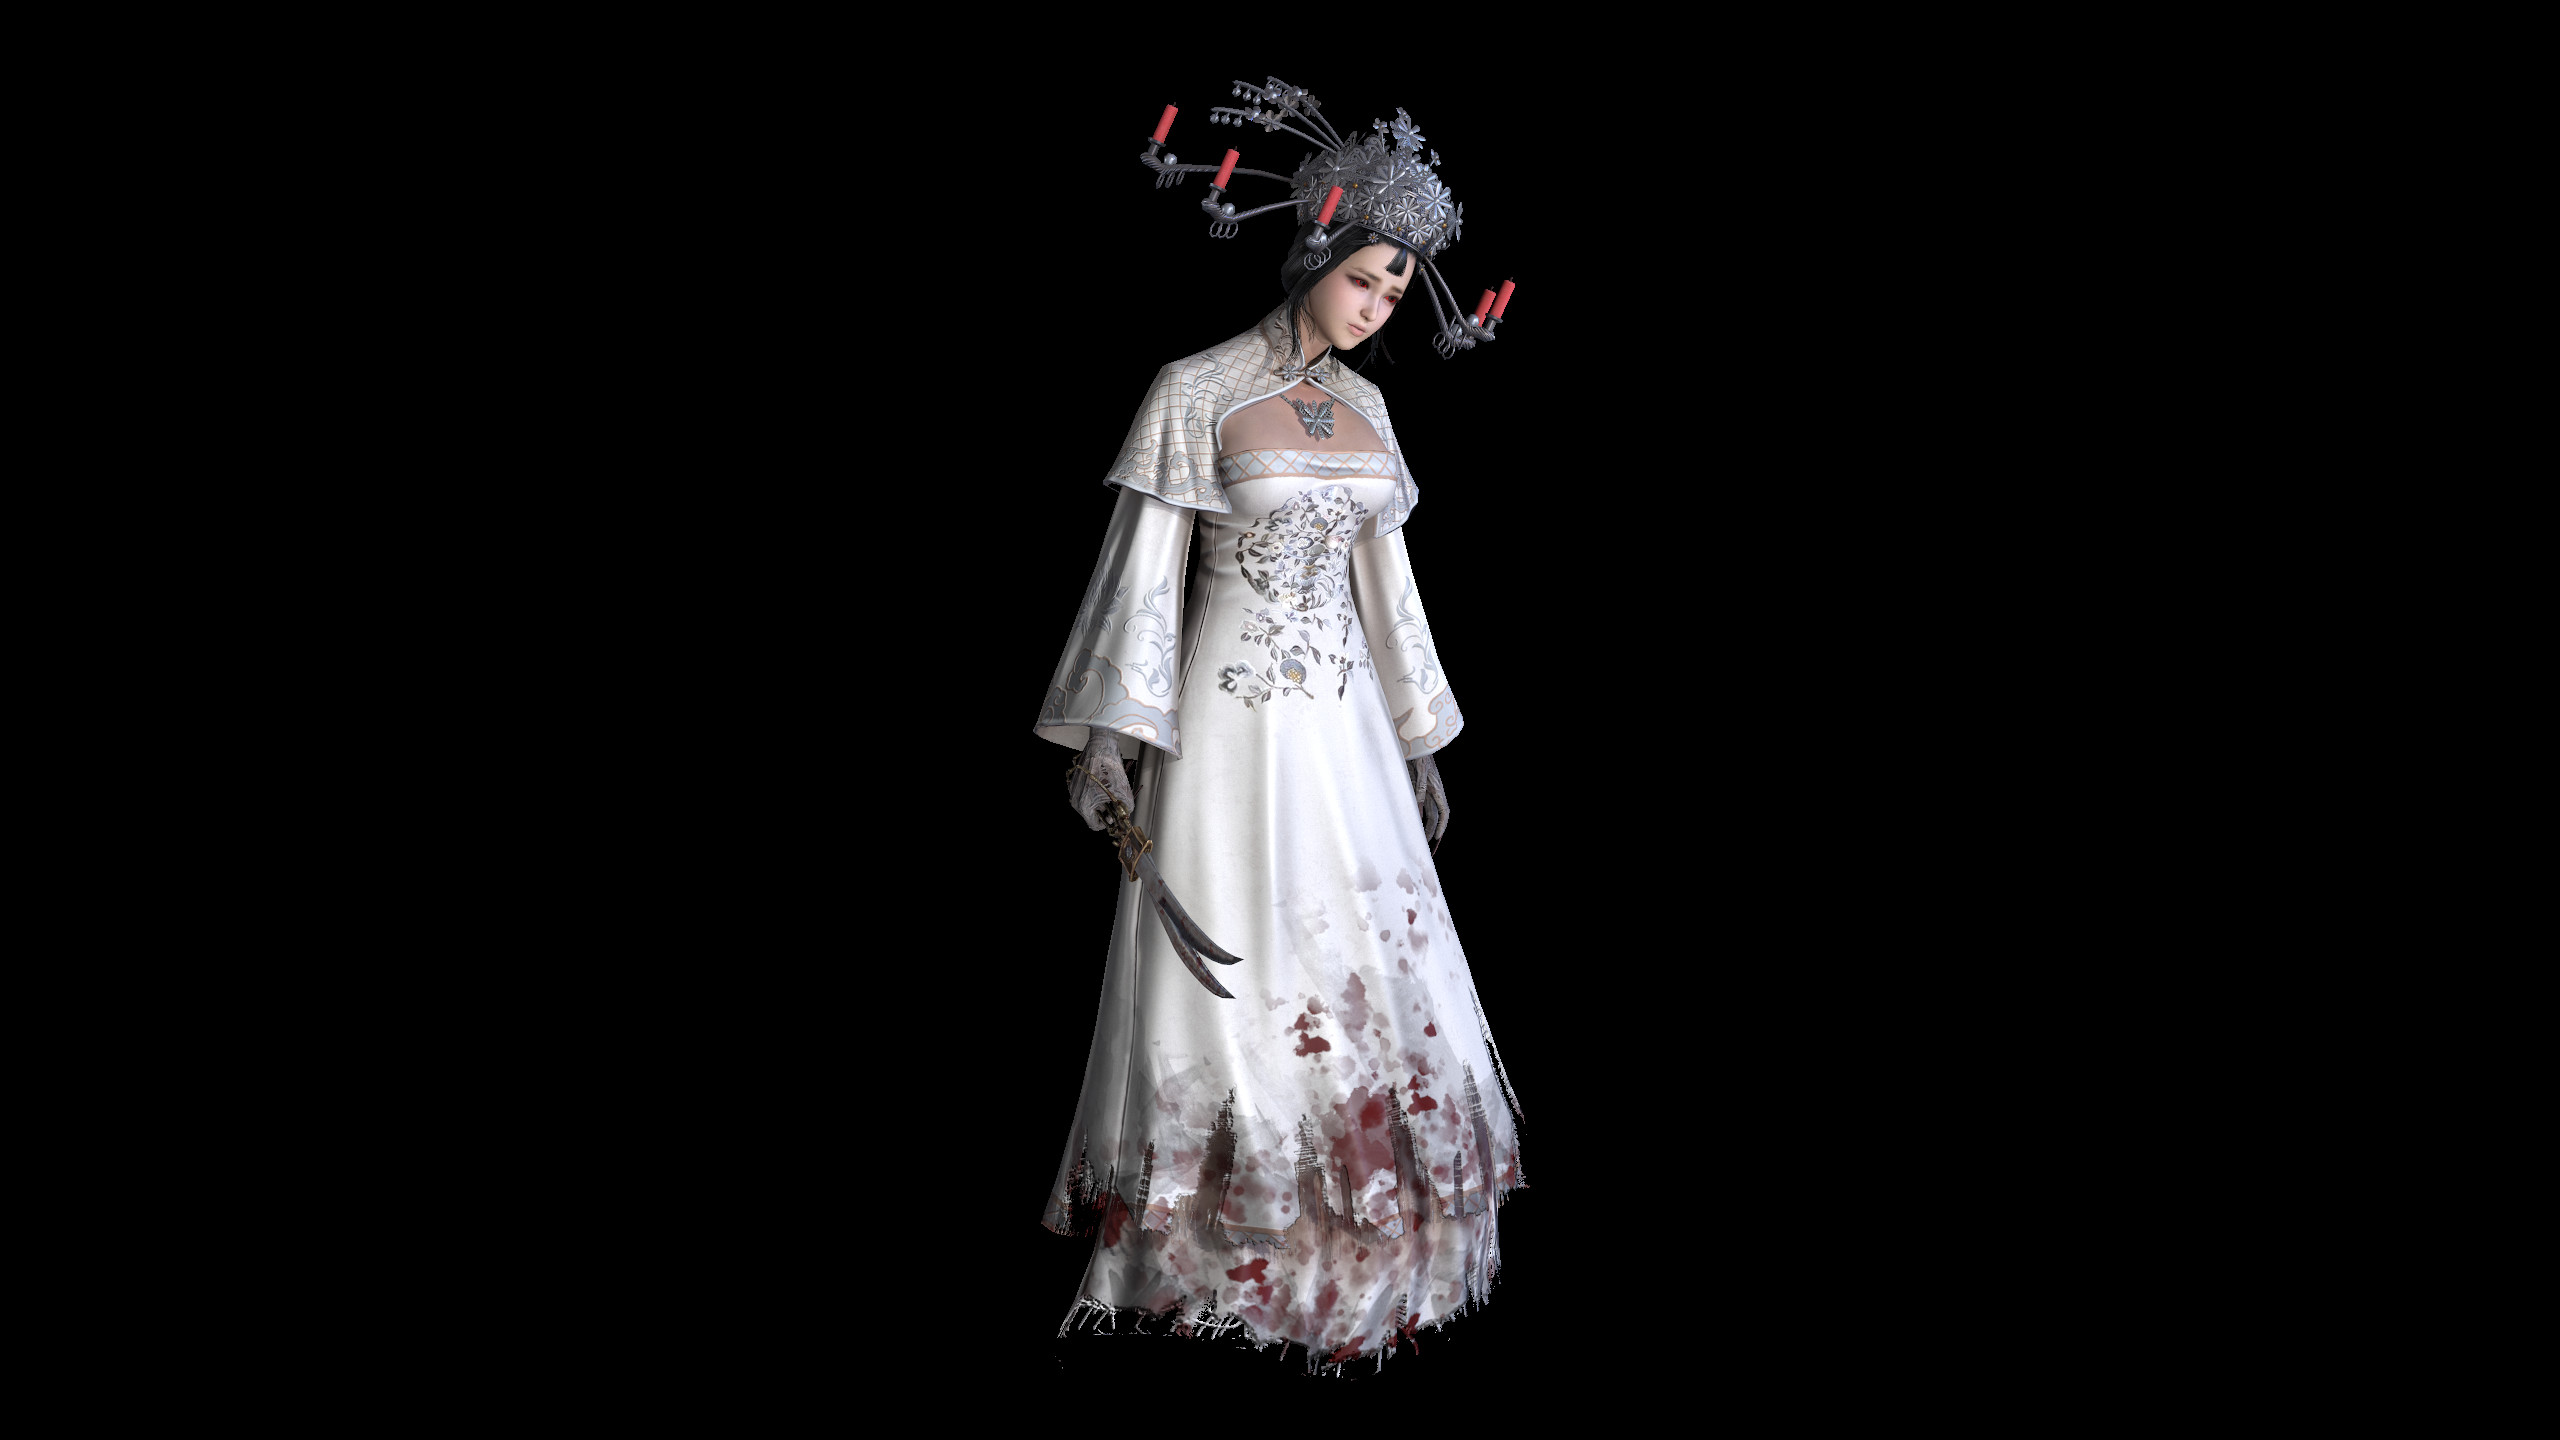 灵魂筹码 - 绣娘红烛空梦套装 Soul at Stake - "Candle In The Dream" The Bride's Outfit screenshot